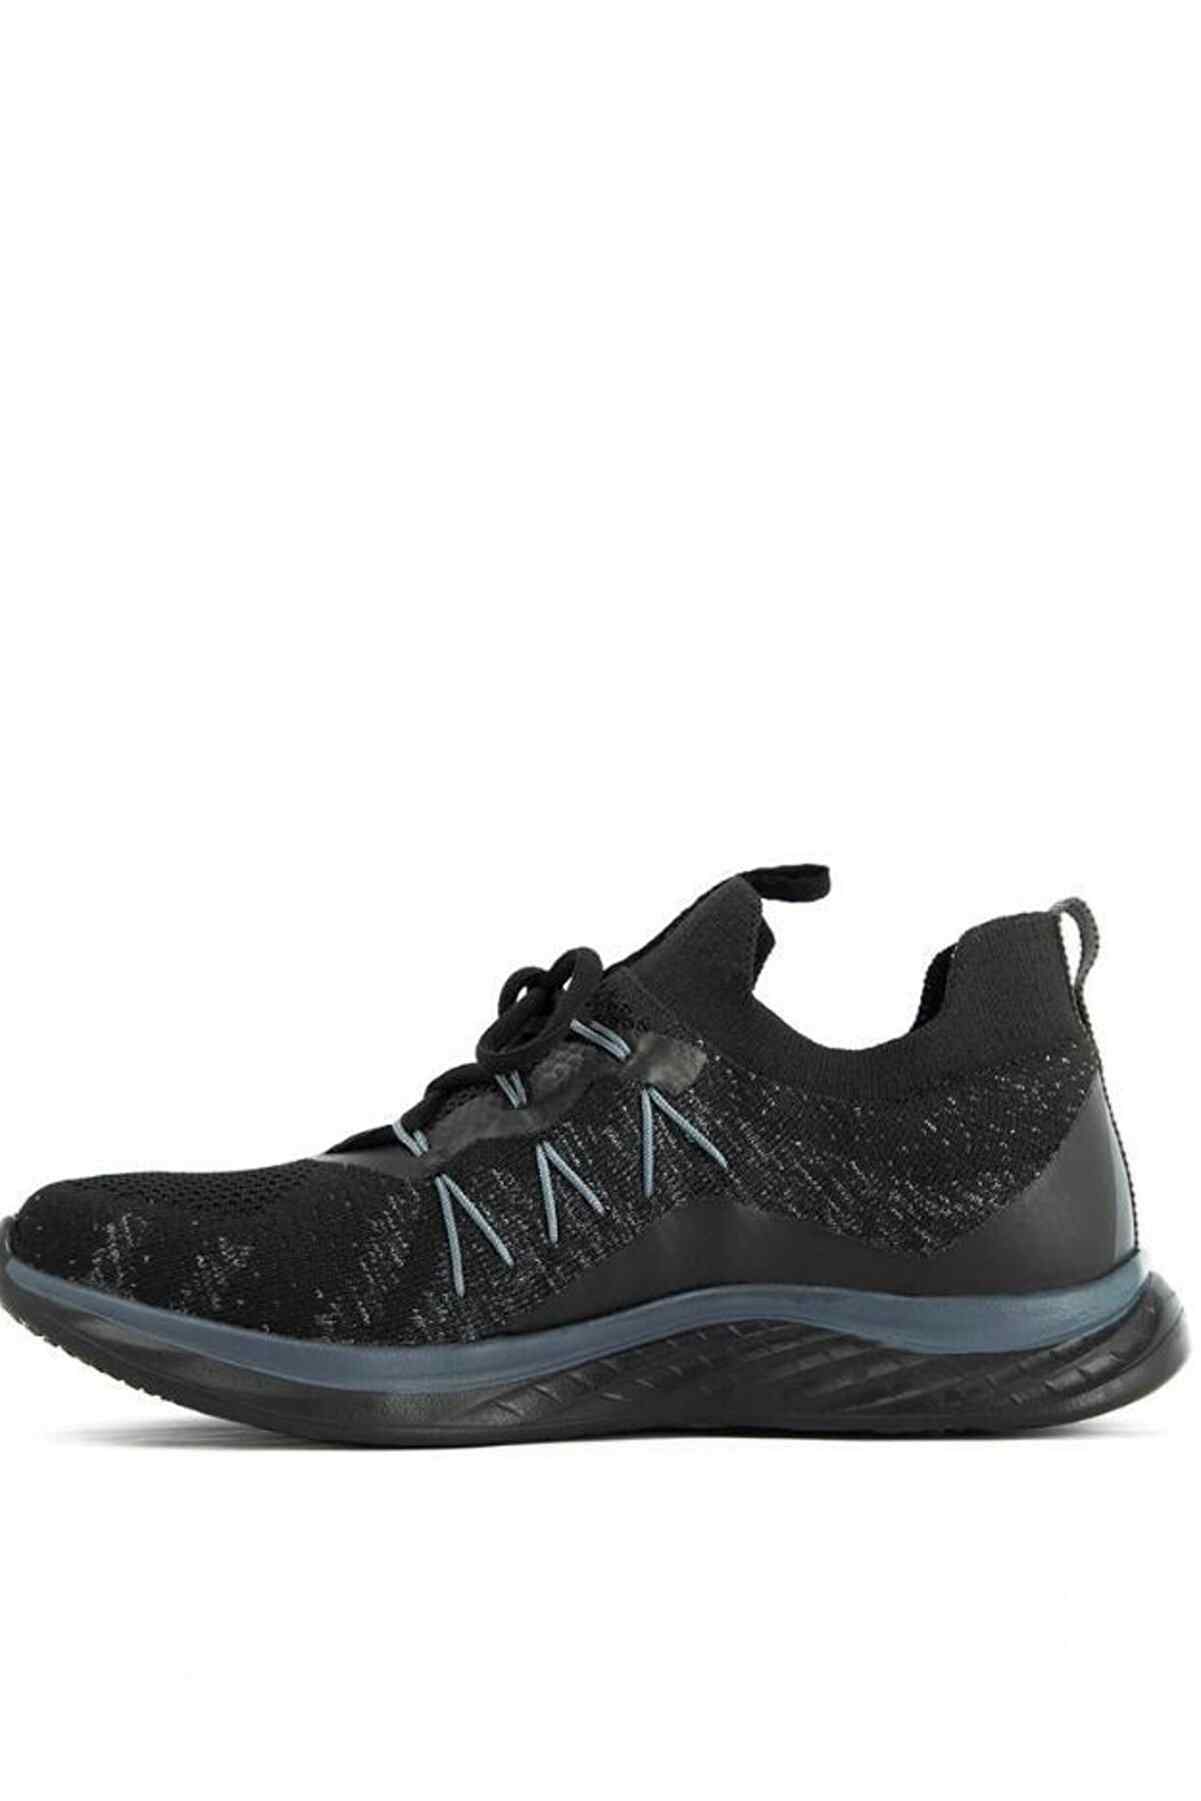 Slazenger Arizona Sneaker Kadın Ayakkabı Siyah